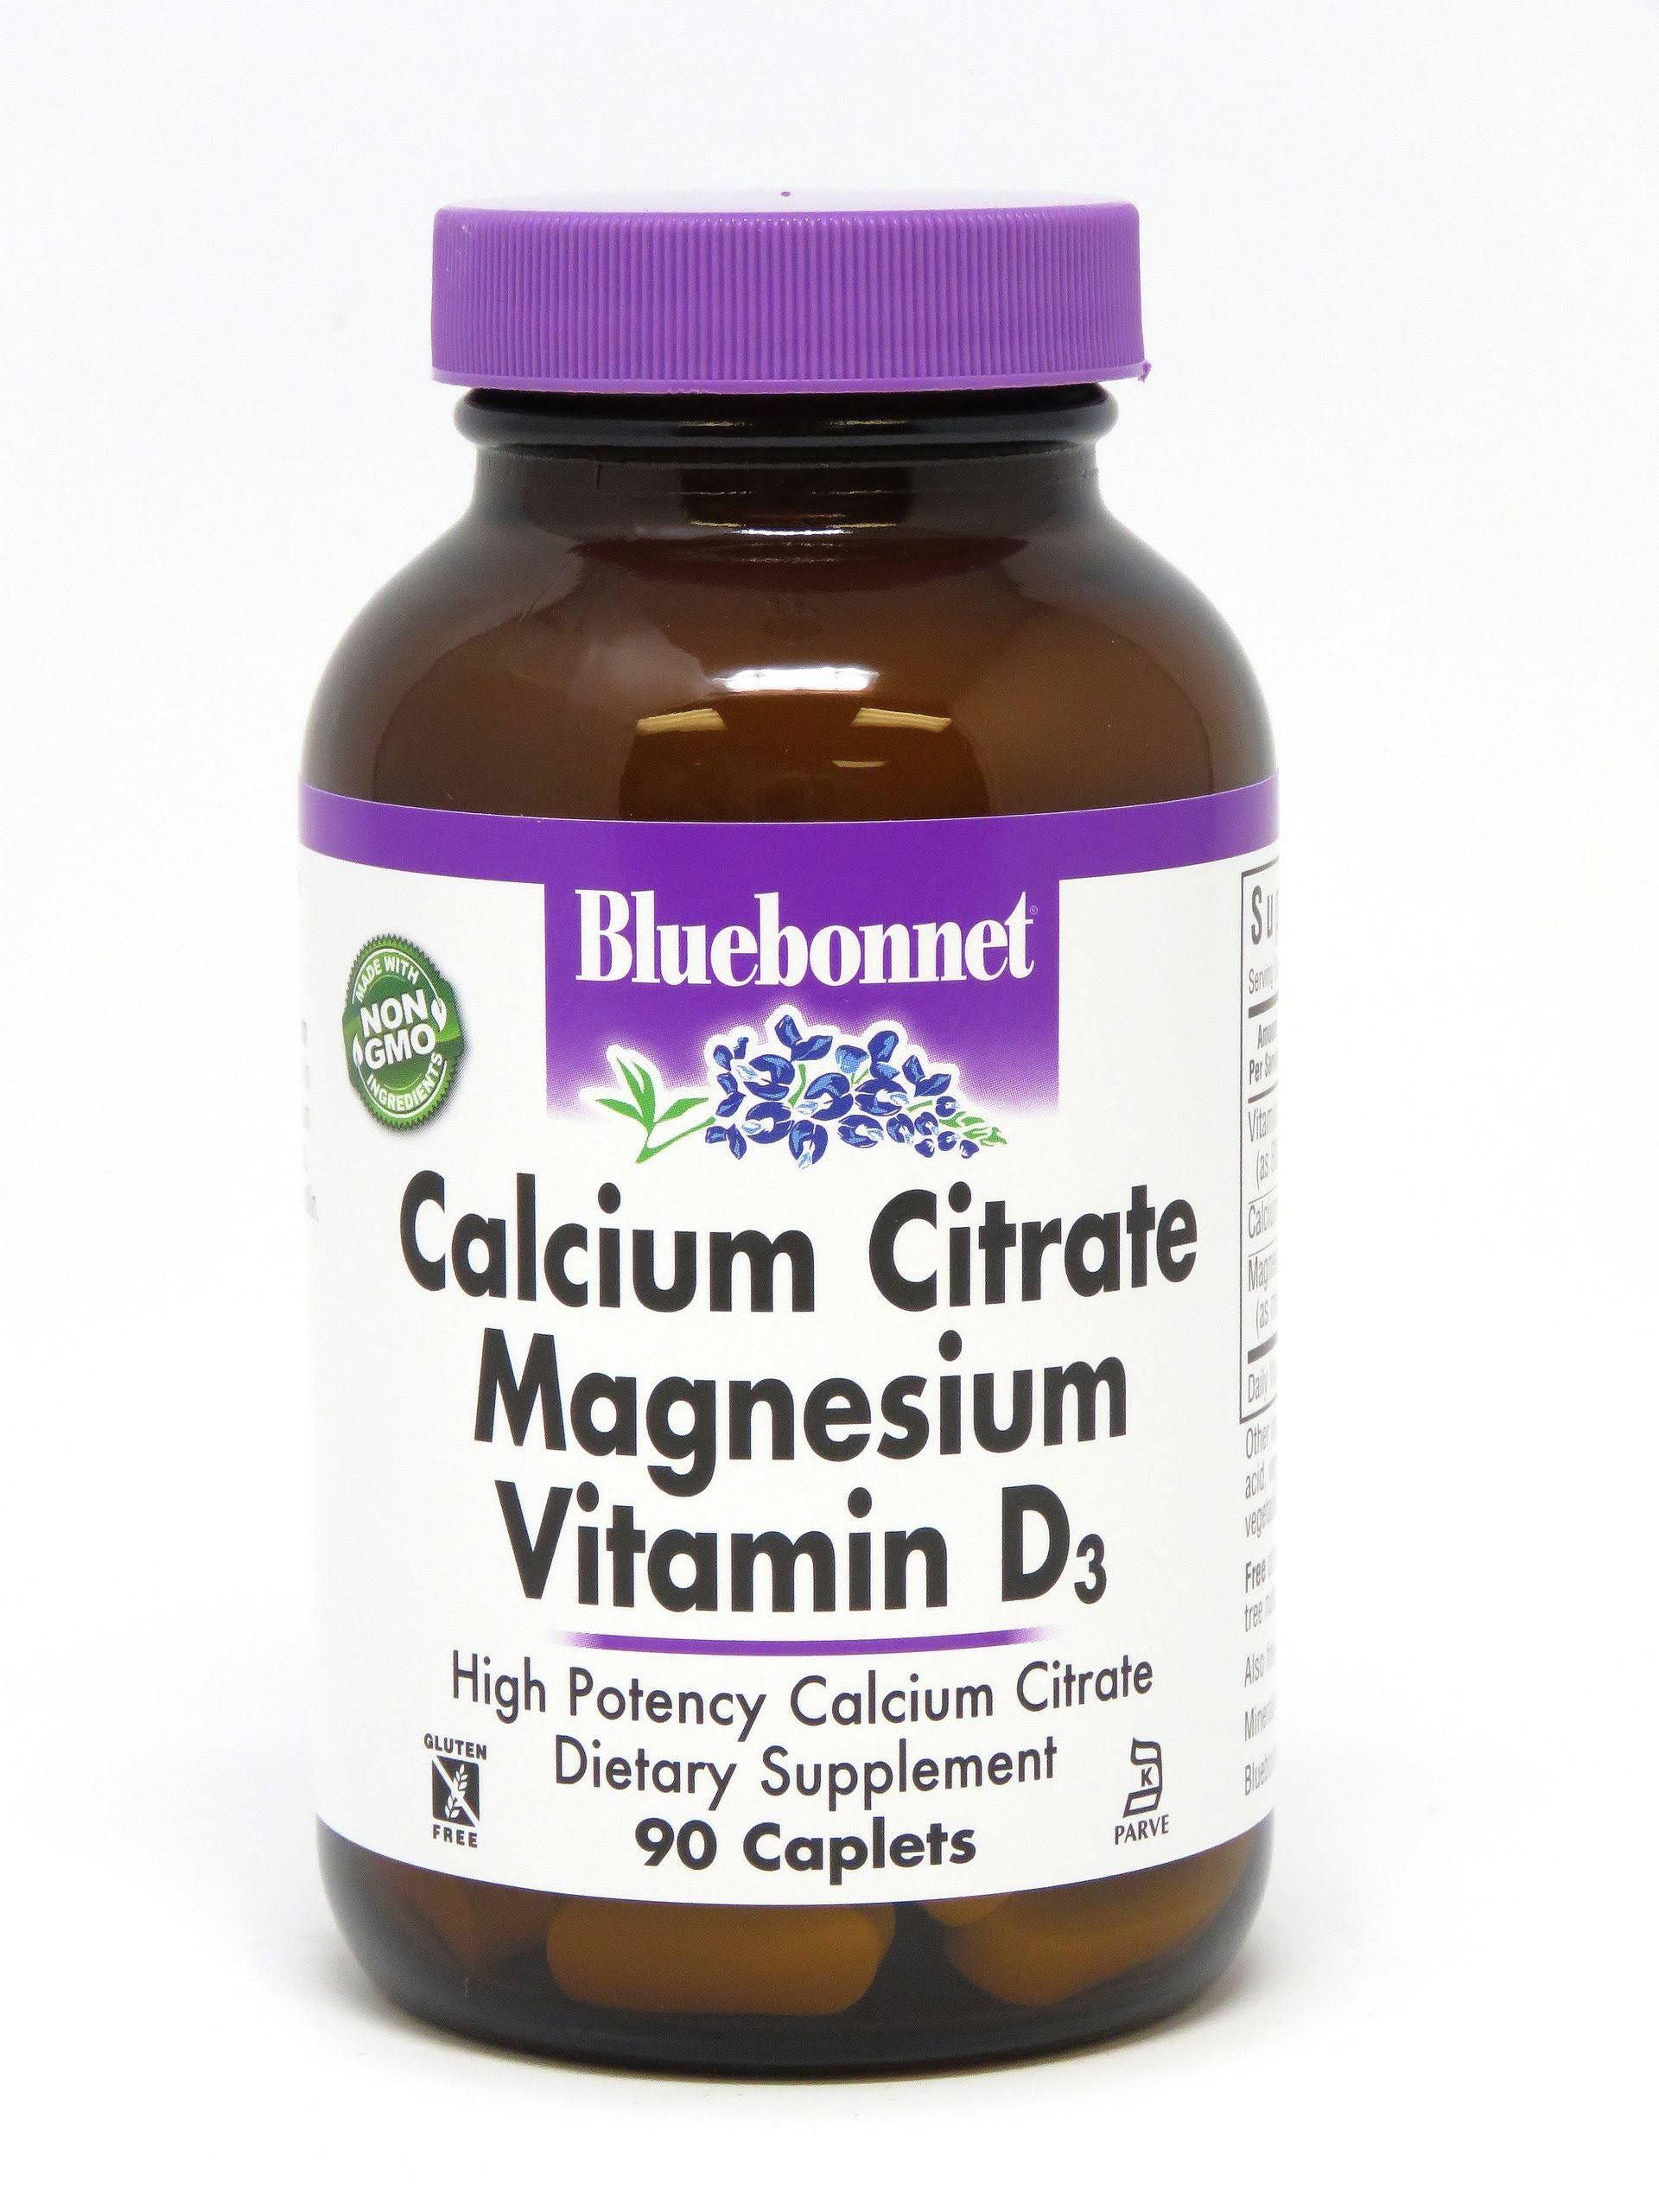 Bluebonnet Calcium Citrate Magnesium Vitamin D3 - 90 Capsules